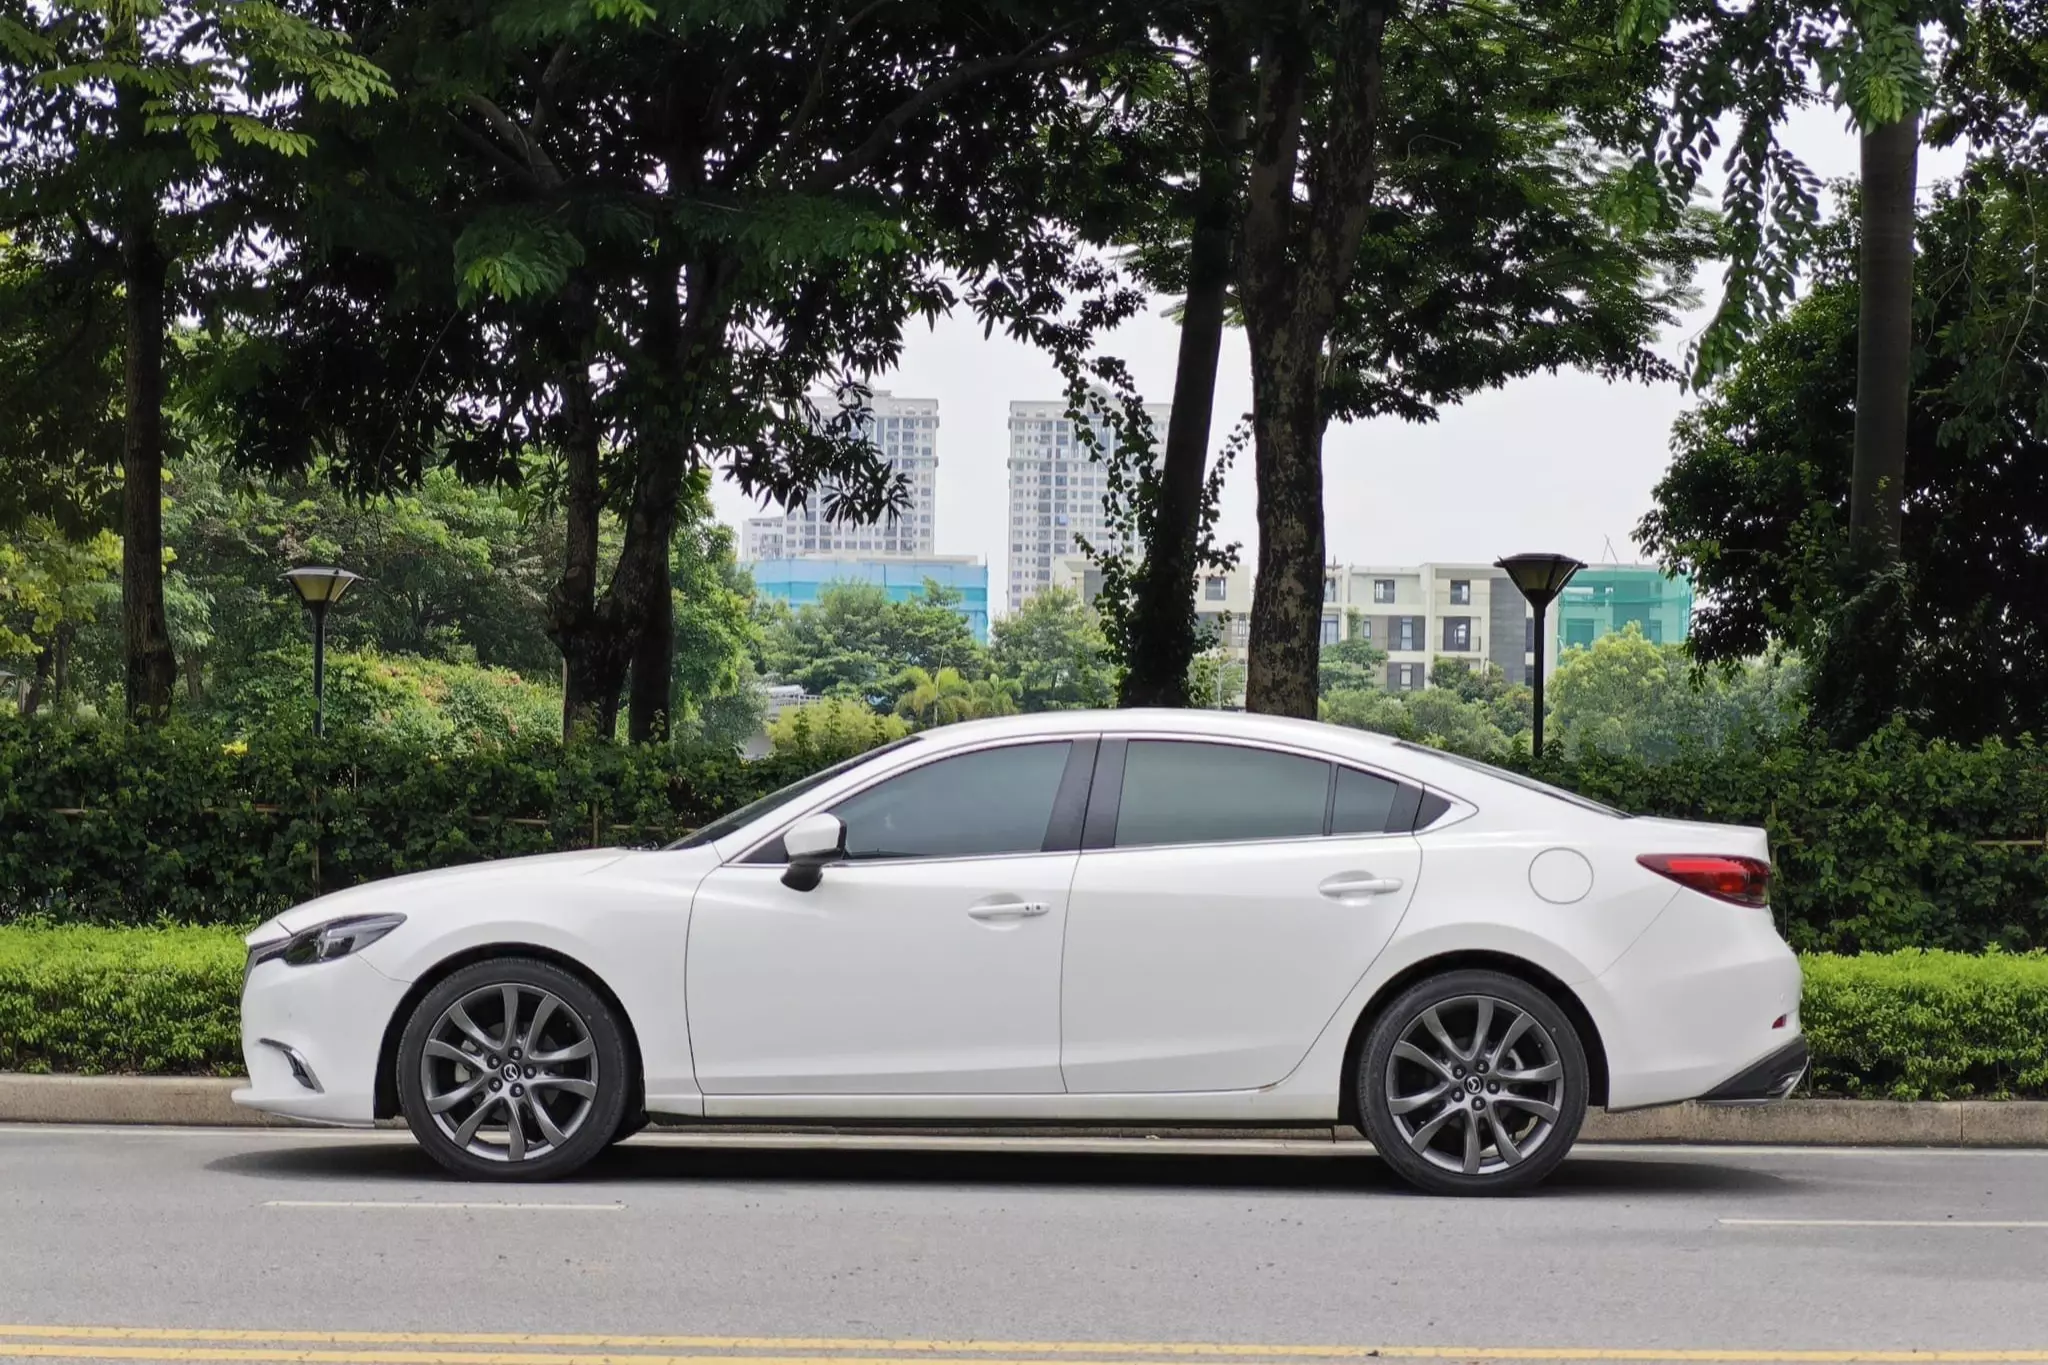 Mazda6 cũ đời 2018 giá 580 triệu đồng, có nên mua thời điểm này? - 5